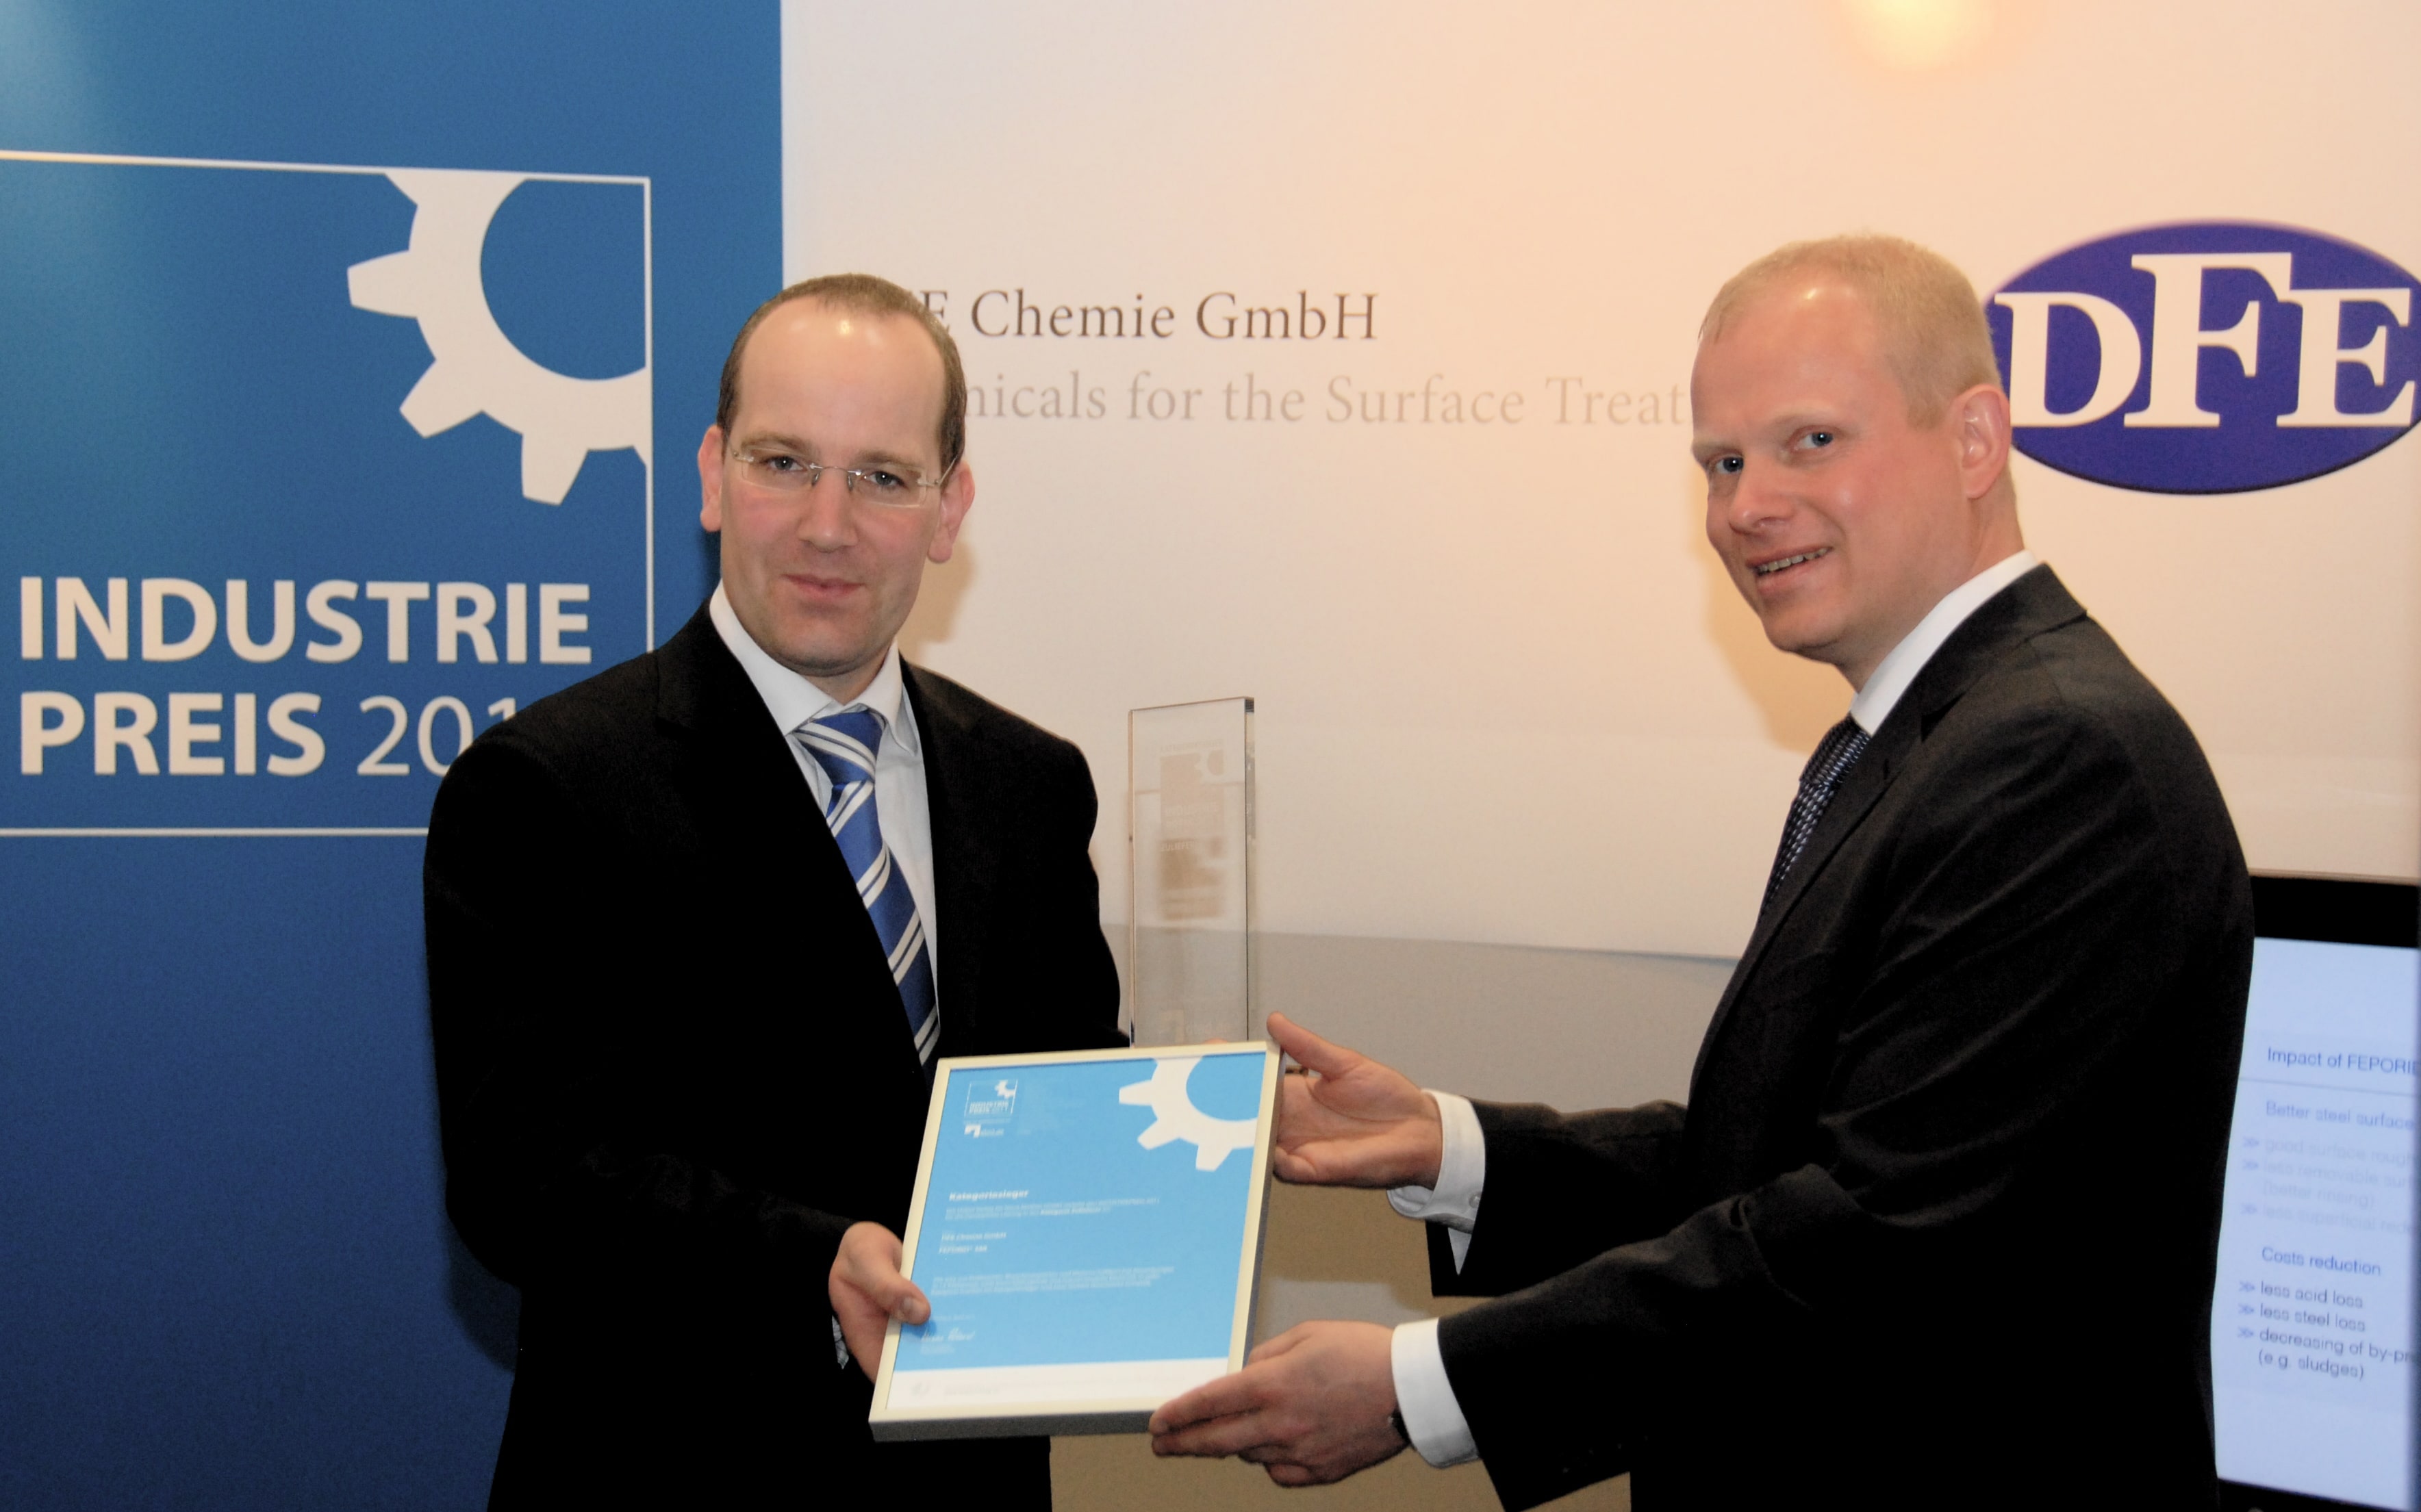 Industry Award 2011 handover